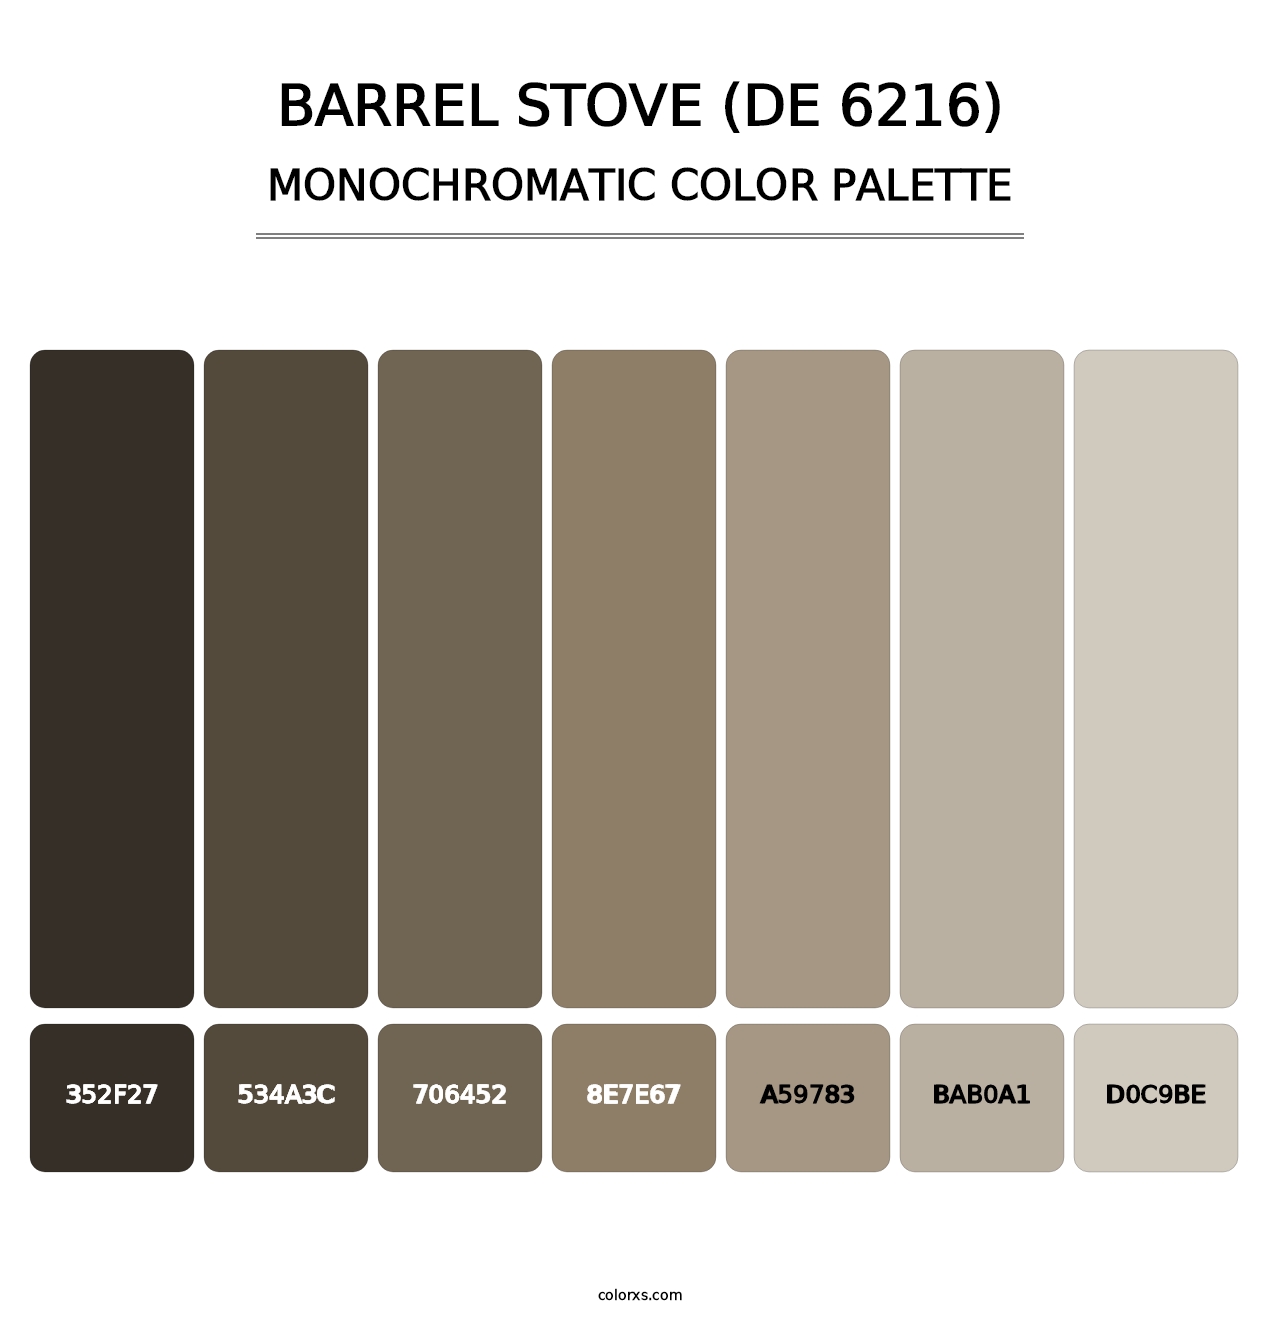 Barrel Stove (DE 6216) - Monochromatic Color Palette